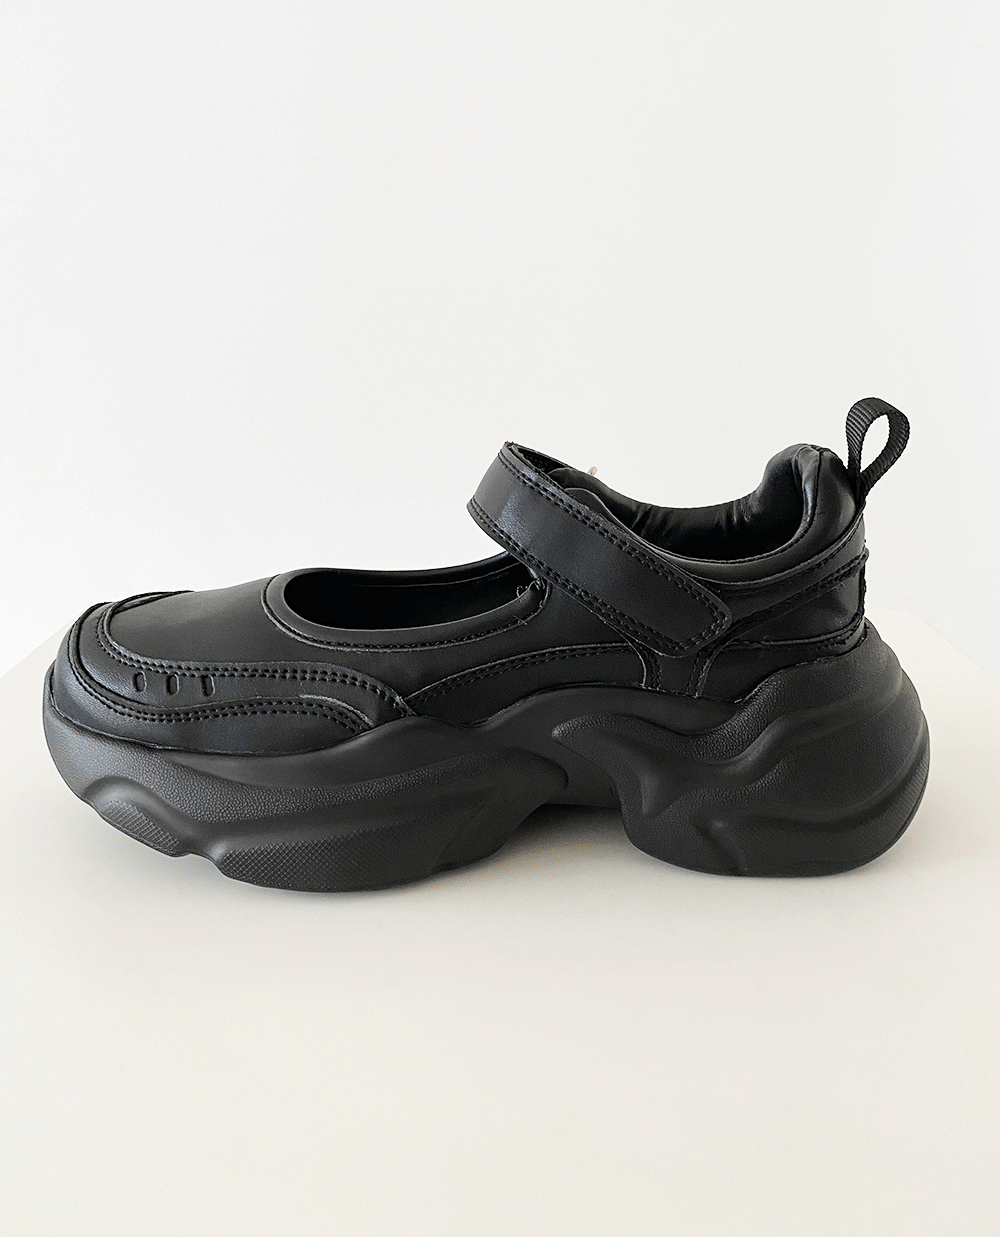 black mary jane sneakers